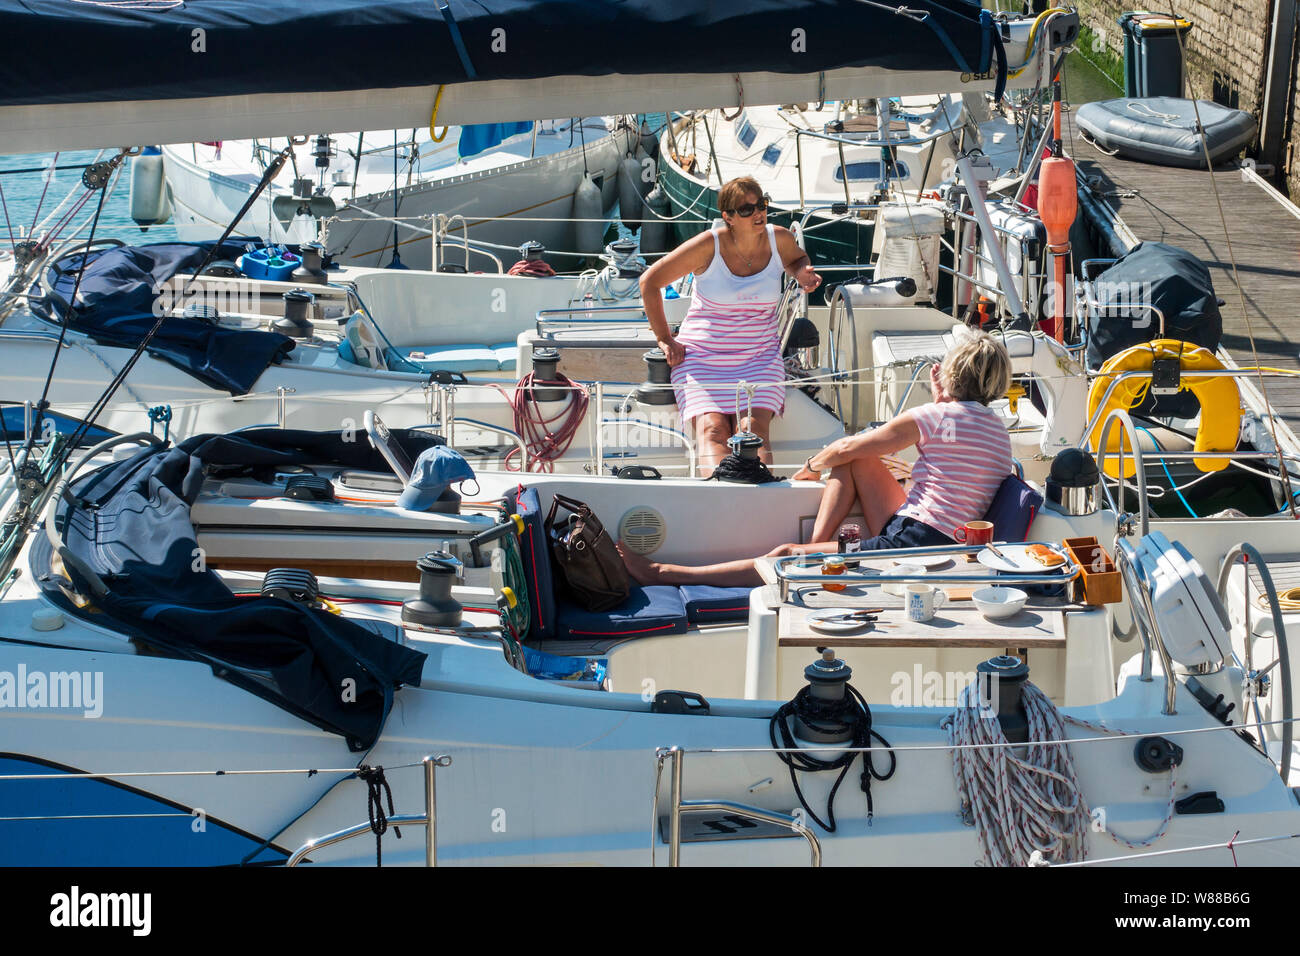 Las mujeres ricas charlando después del desayuno a bordo de sus yates vecinos / veleros acoplado / amarrados en la marina puerto / cuenca / yate en verano Foto de stock